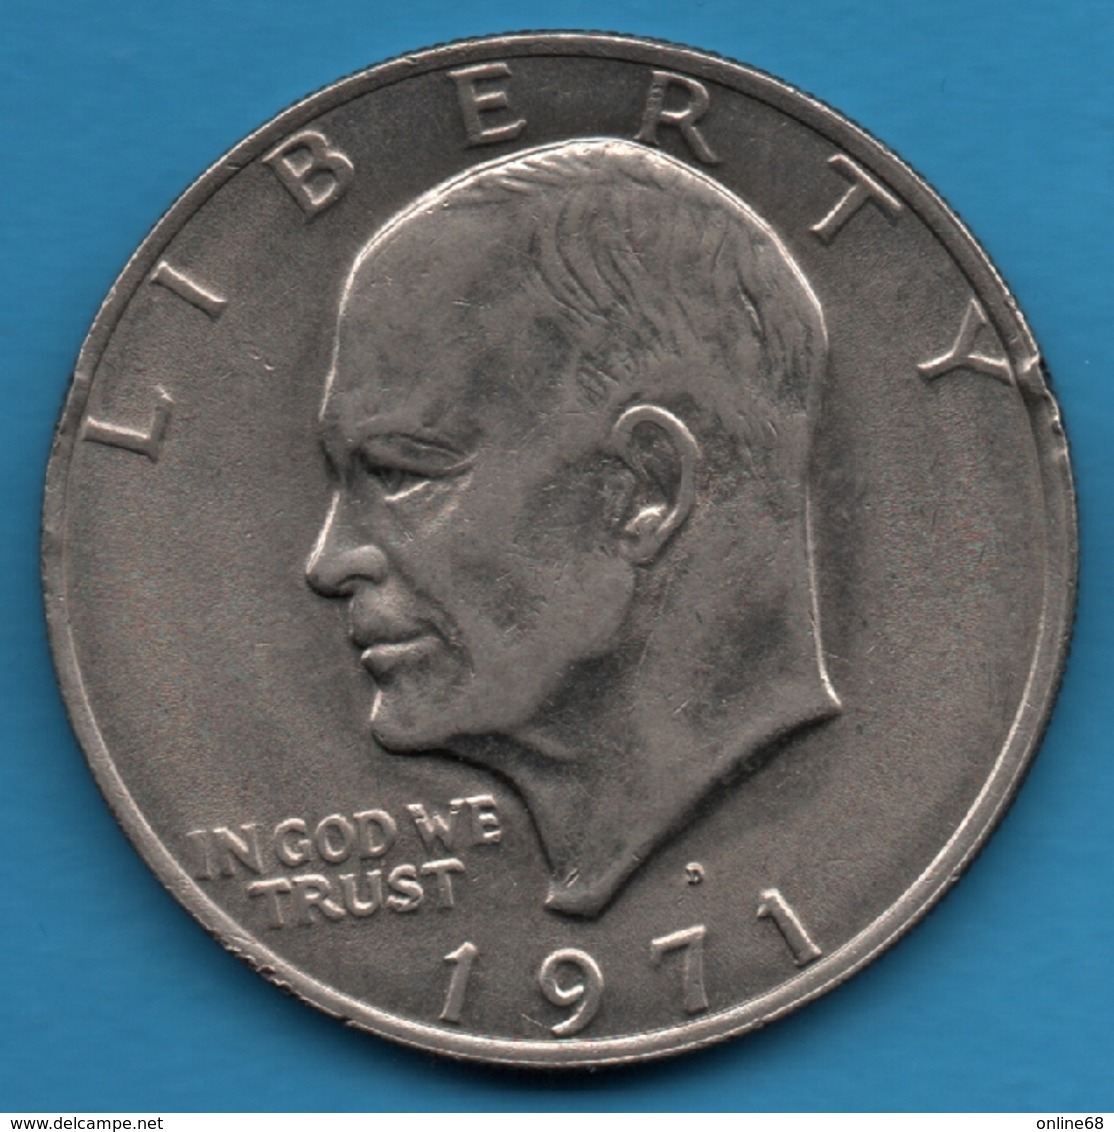 USA 1 DOLLAR 1971 D  Eisenhower Dollar  KM# 203 - 1971-1978: Eisenhower